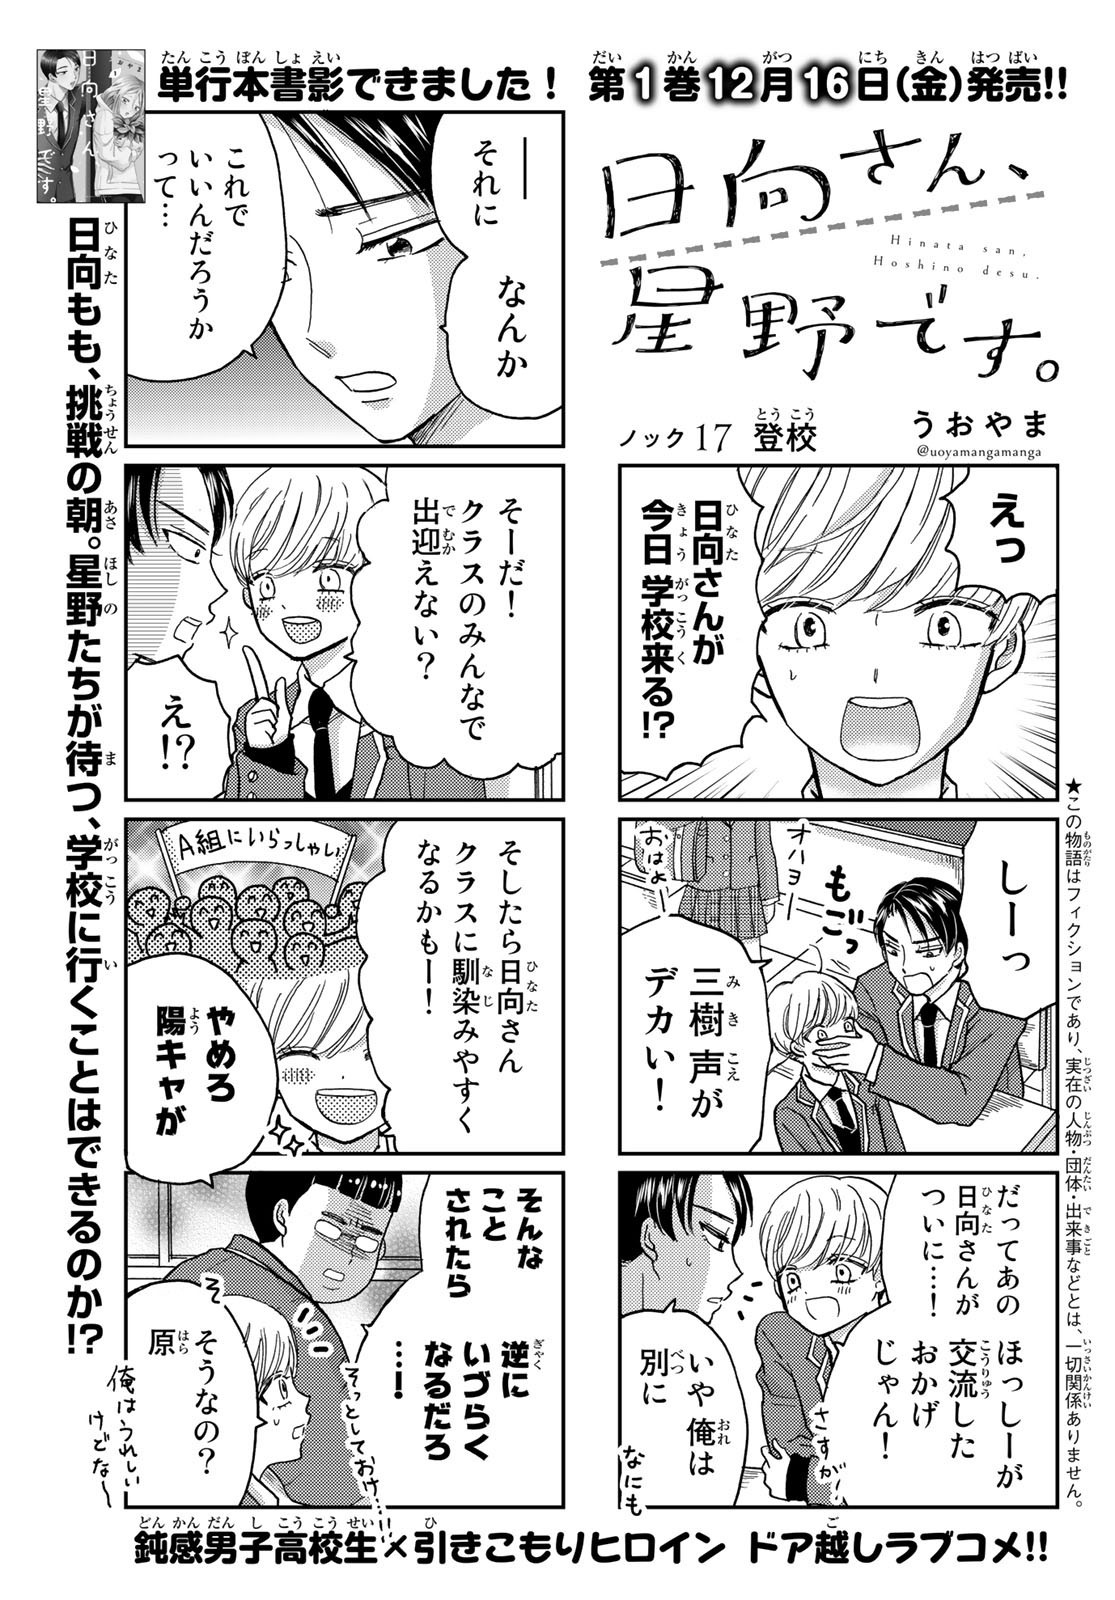 Hinata-san, Hoshino desu. - Chapter 017 - Page 1